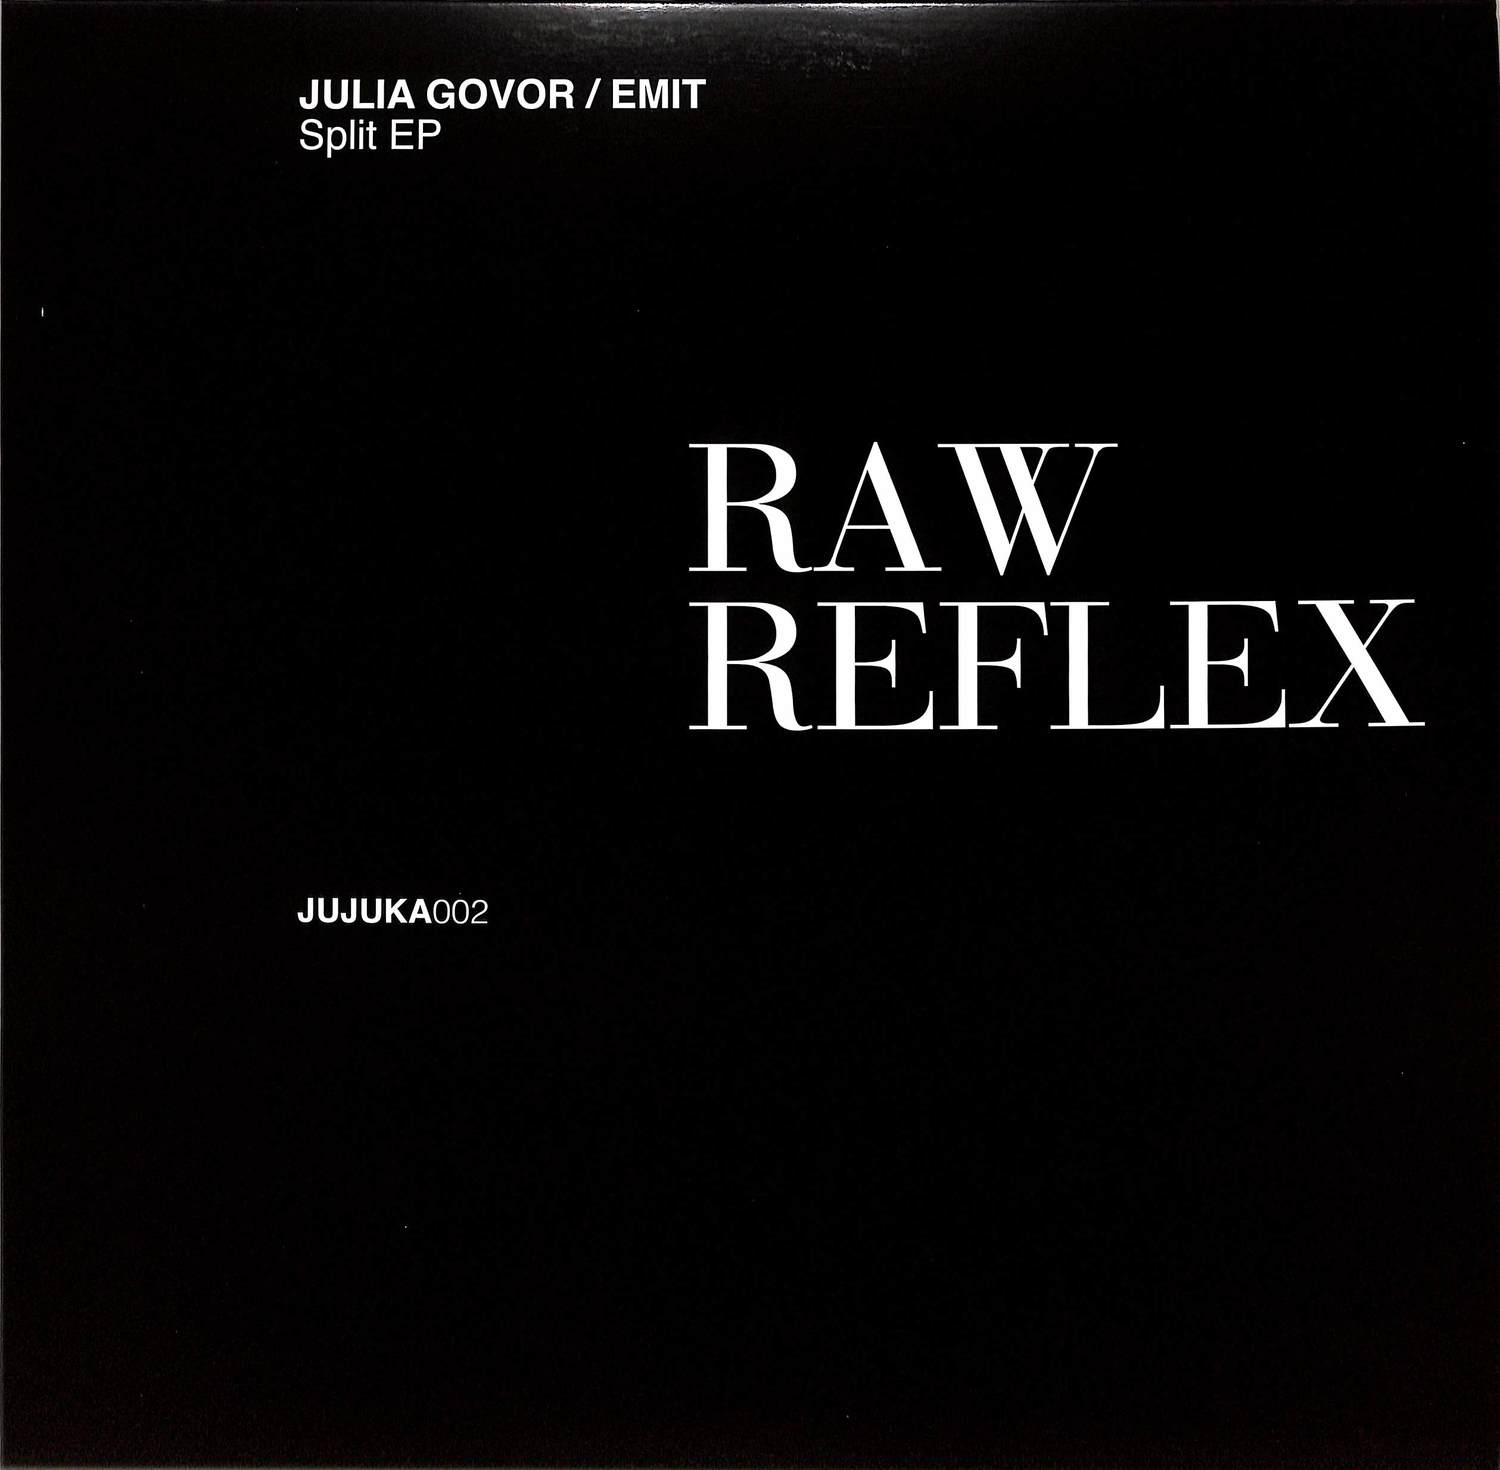 Julia Govor / Emit - RAW REFLEX 